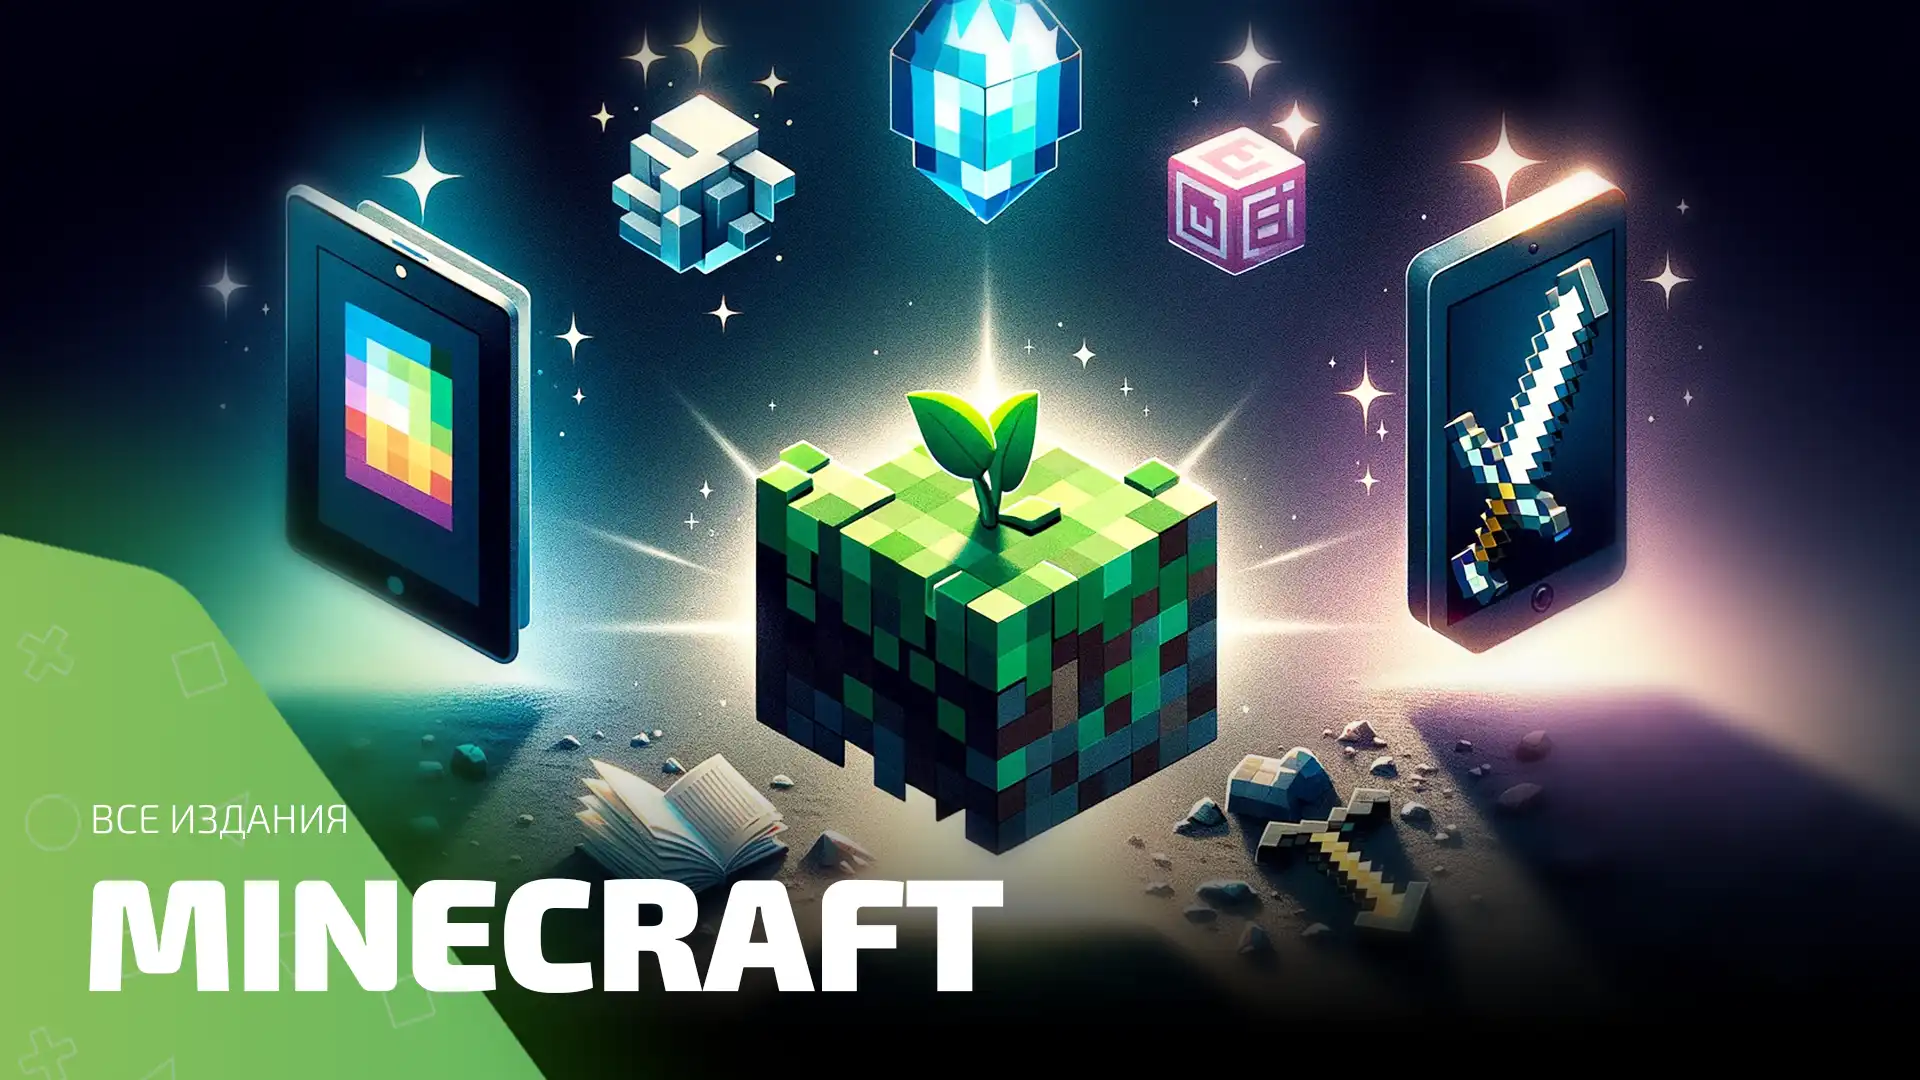 Коллаж изданий Minecraft с изображением планшетов, кристаллов и меча на фоне кубической планеты.